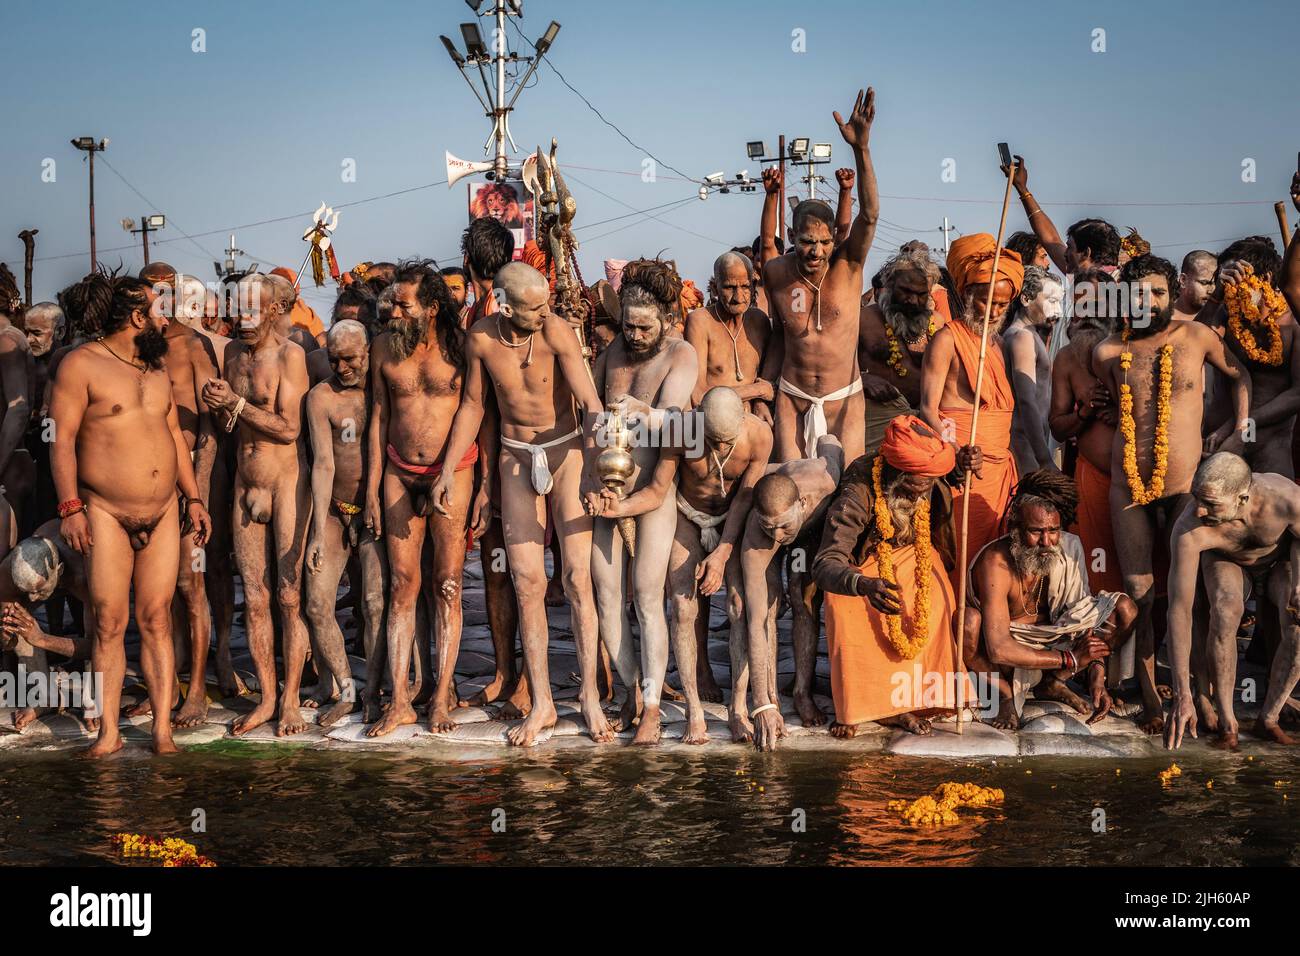 Naga Sadhus (hombres santos indios) preparándose para entrar en las aguas sagradas en el Sangam, Festival Kumbh Mela en Allahabad (Prayagraj), Uttar Pradesh, India. Foto de stock